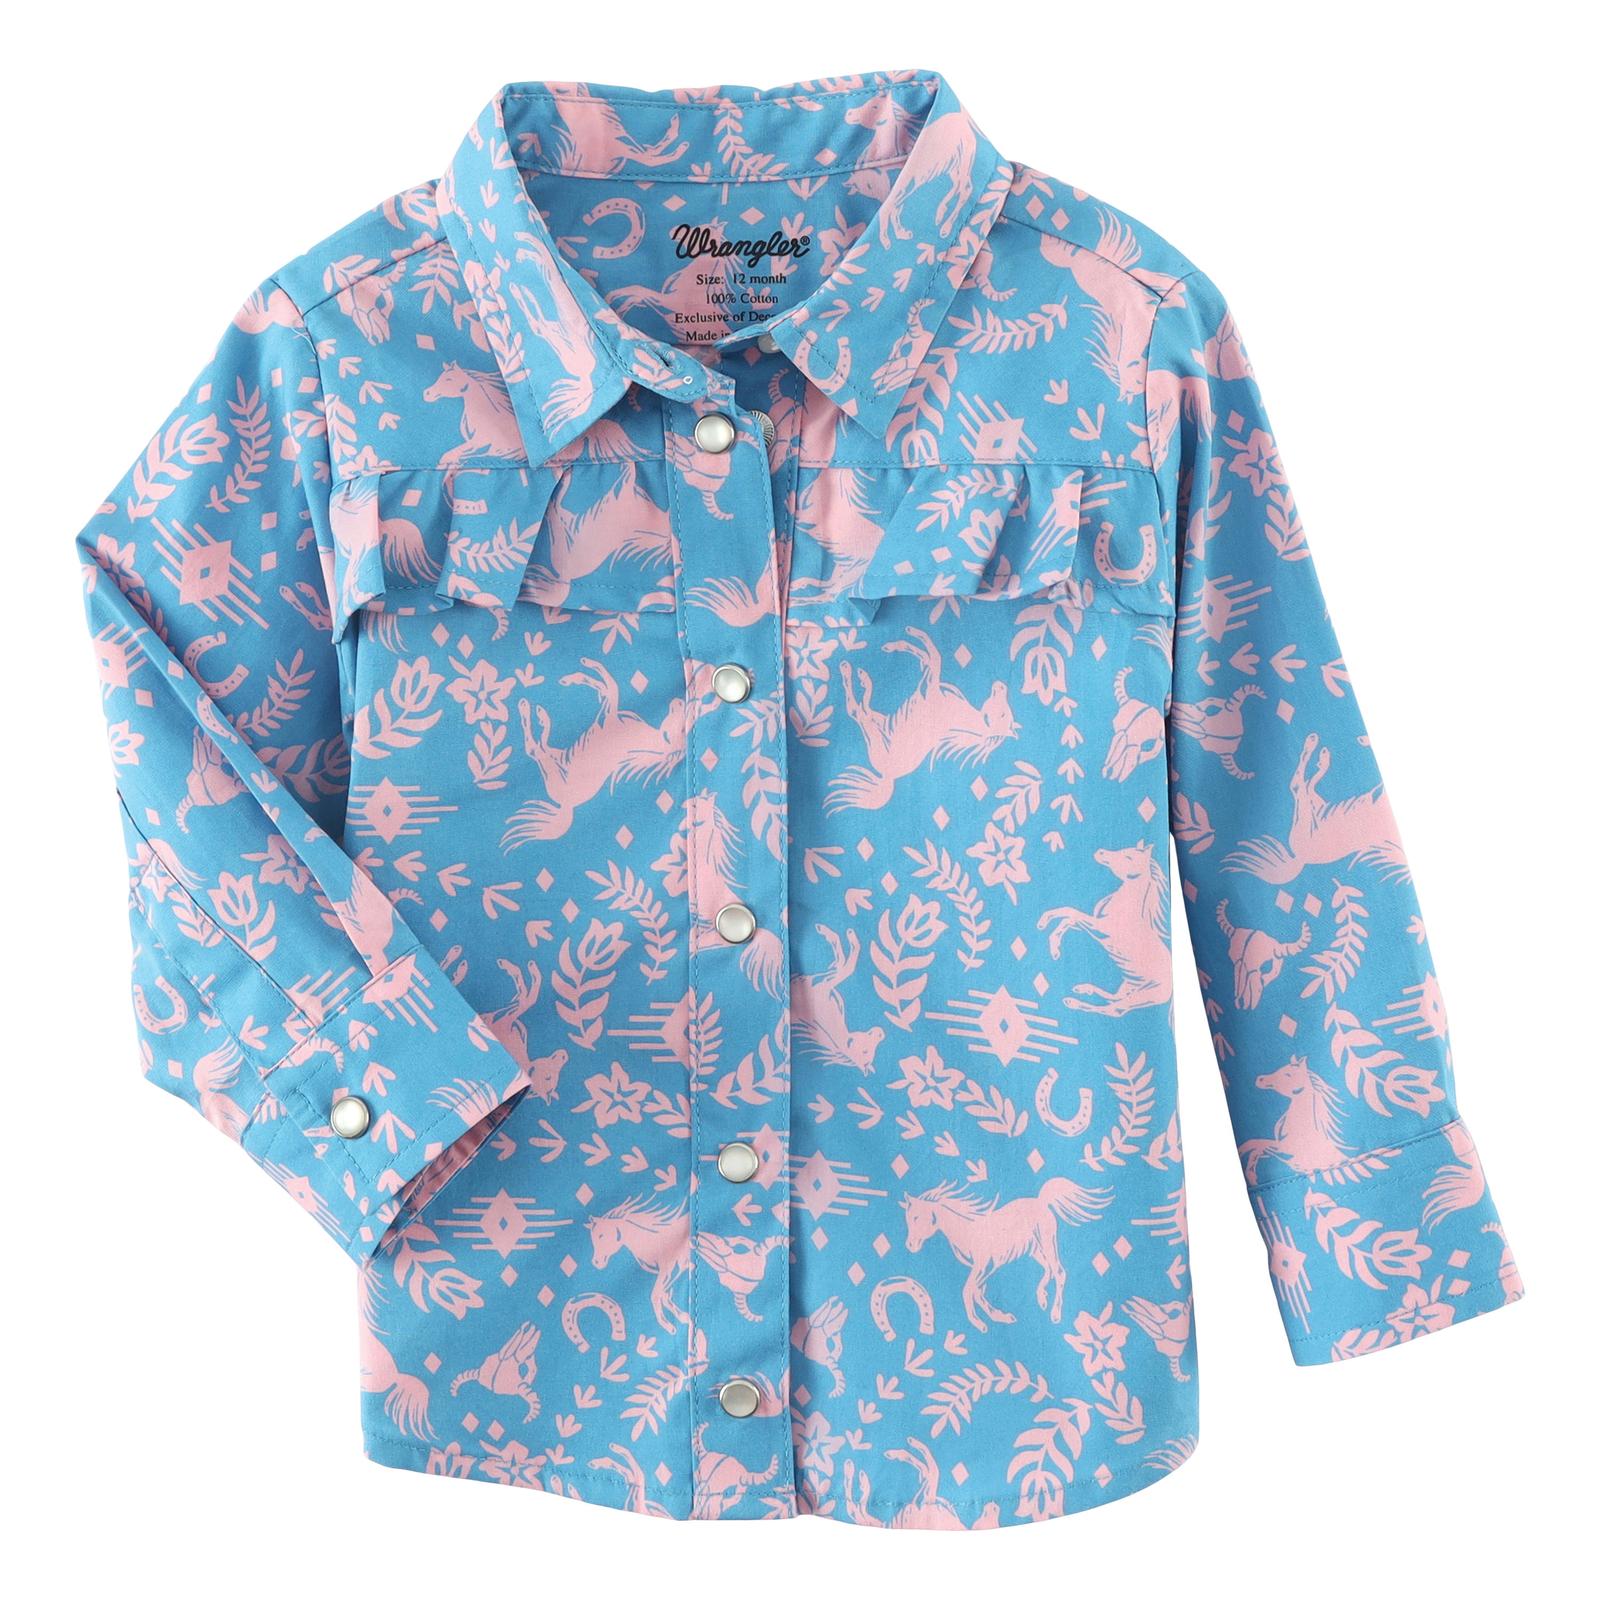 Wrangler Infant/Toddler Girl's Long Sleeve Shirt STYLE 112338544